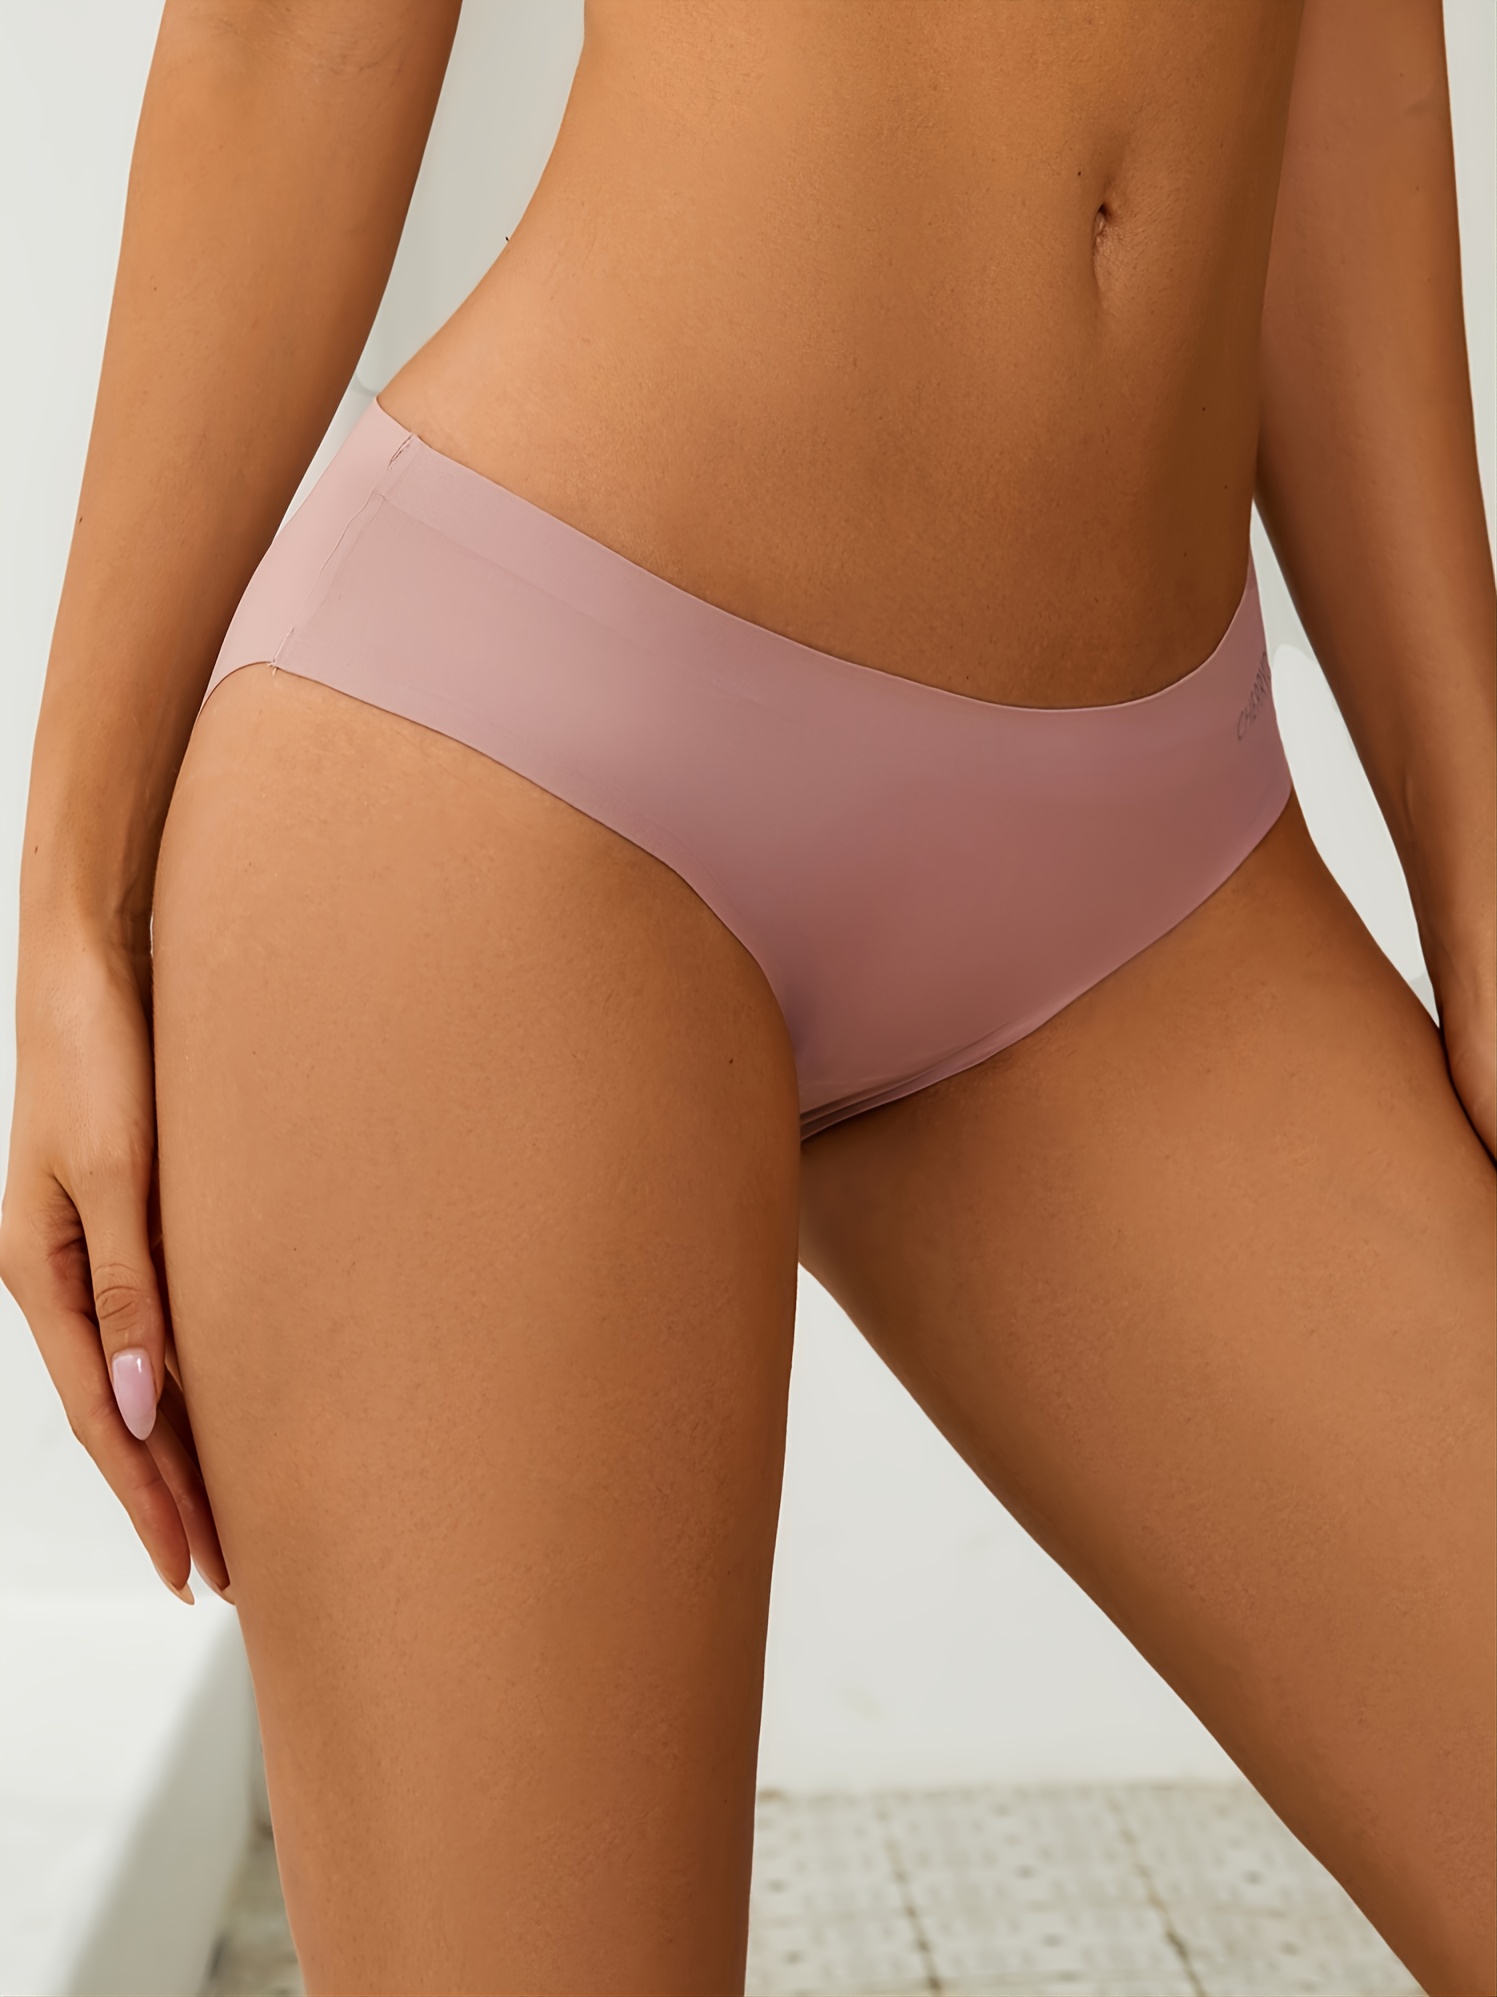 4-pack Full Coverage Underwear Bikini Women's Breathable Panties Seamless  Comfort Underwear Ladies Panties